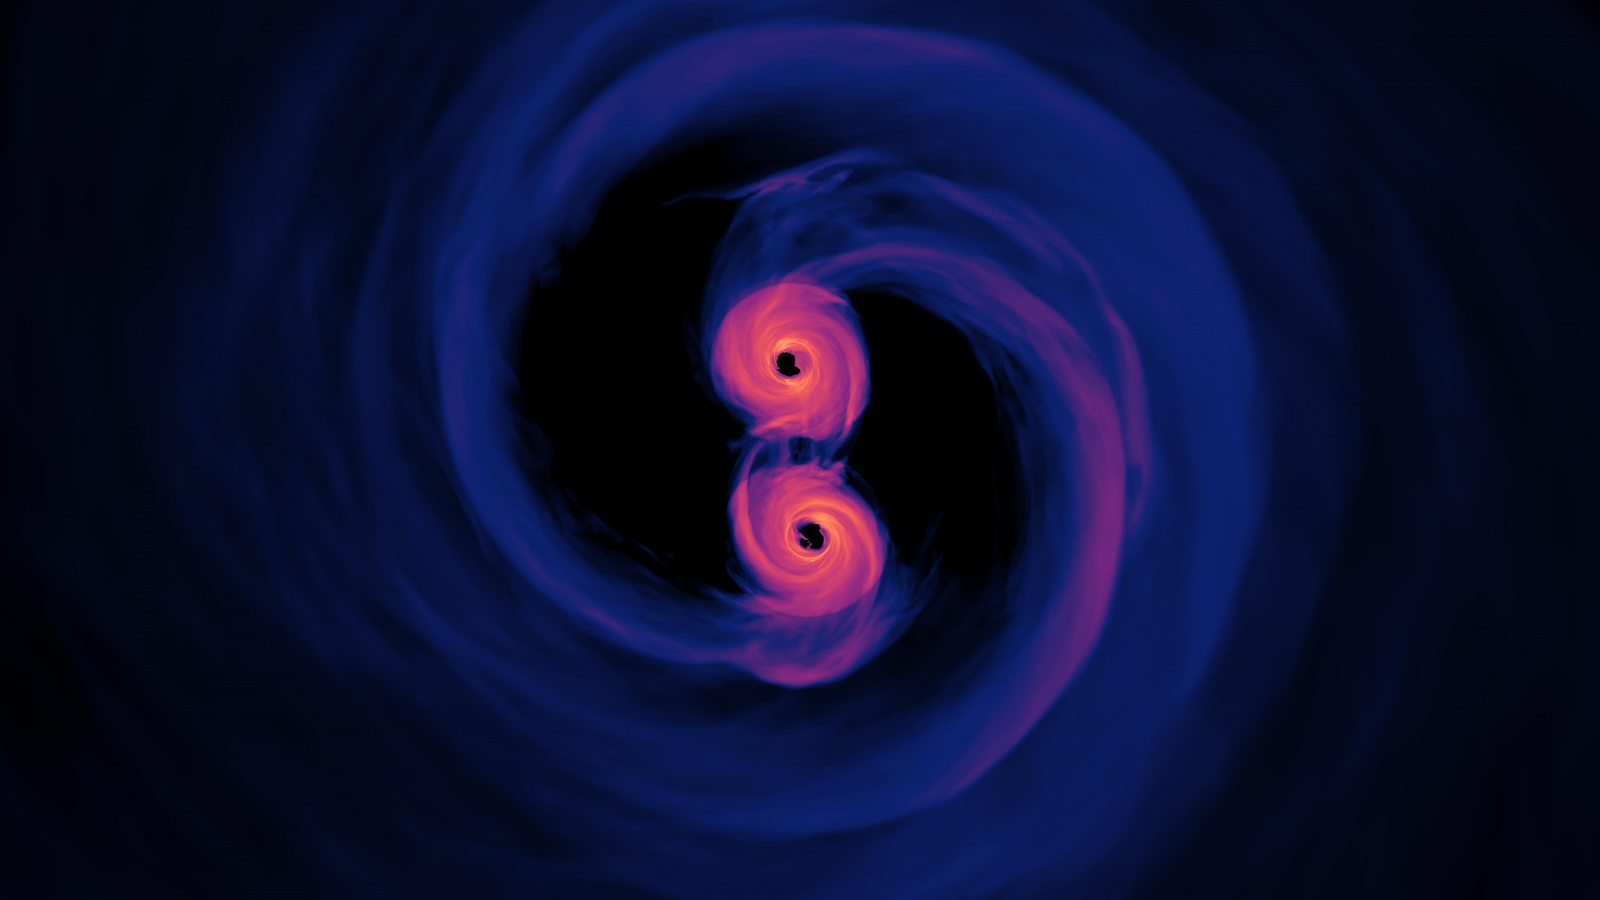 Когда две чёрные дыры сливаются, значительная часть их массы может превратиться в энергию за один очень короткий промежуток времени. Но в течение гораздо более длительного периода времени существует более ранняя стадия, когда эти чёрные дыры вращаются с периодом 1-10 лет, и время пульсаров может быть чувствительным к совокупному эффекту этих систем во всём космосе. Сверхмассивные чёрные дыры могут расти в основном за счёт таких типов слияний.